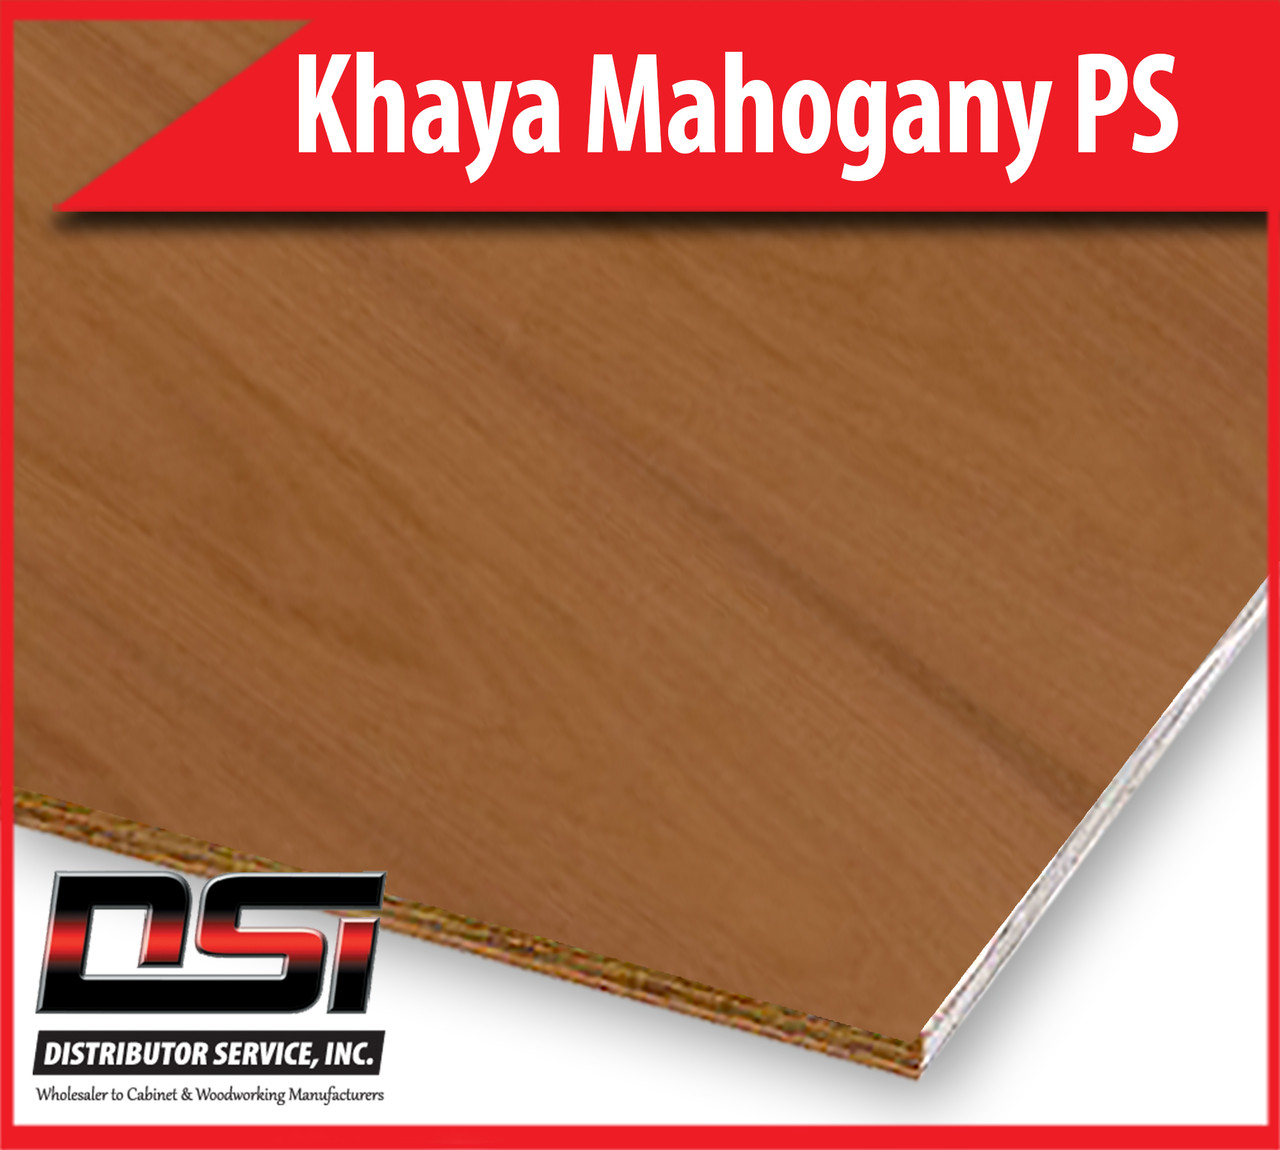 Khaya Mahogany Plywood Plain Sliced VC A4 1/4" x 4x8